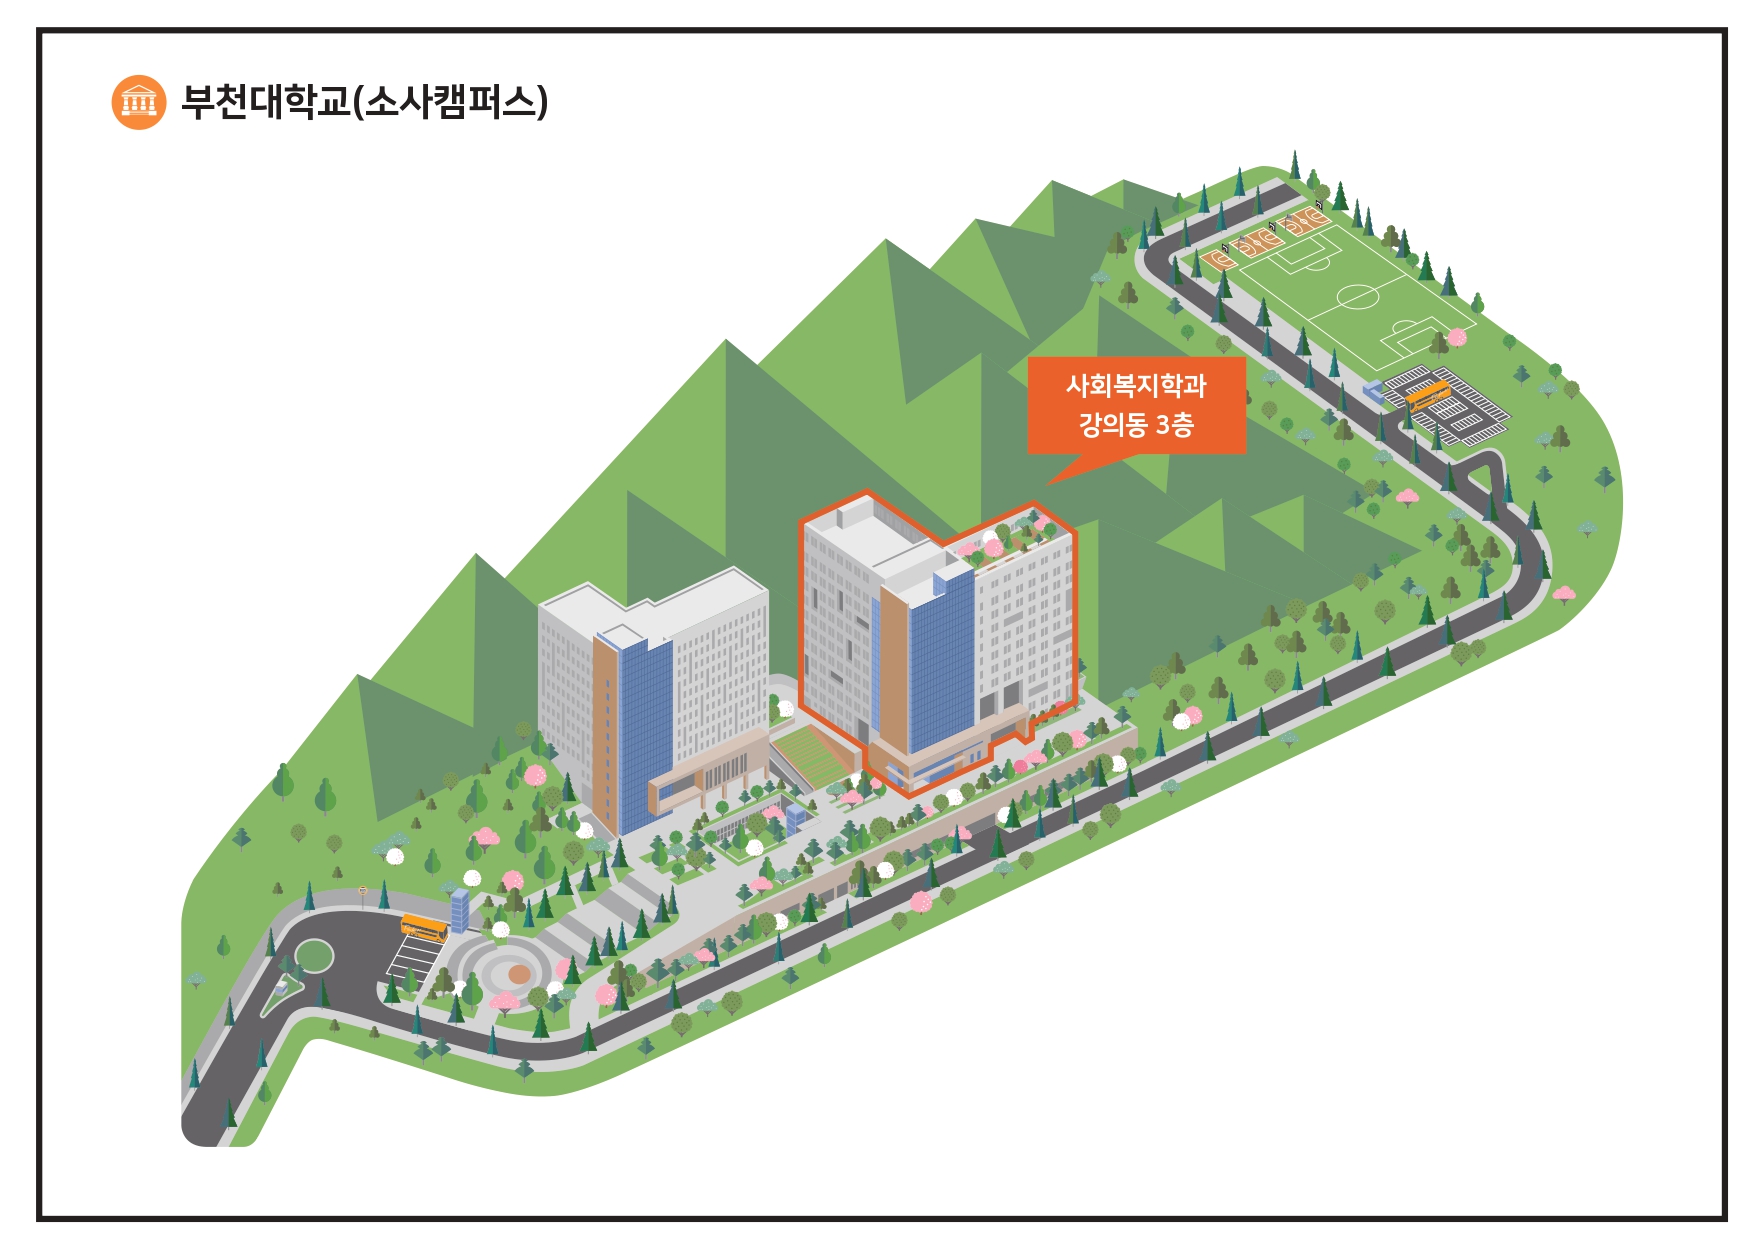 부천대학교(소사캠퍼스) 사회복지과 강의동 3층